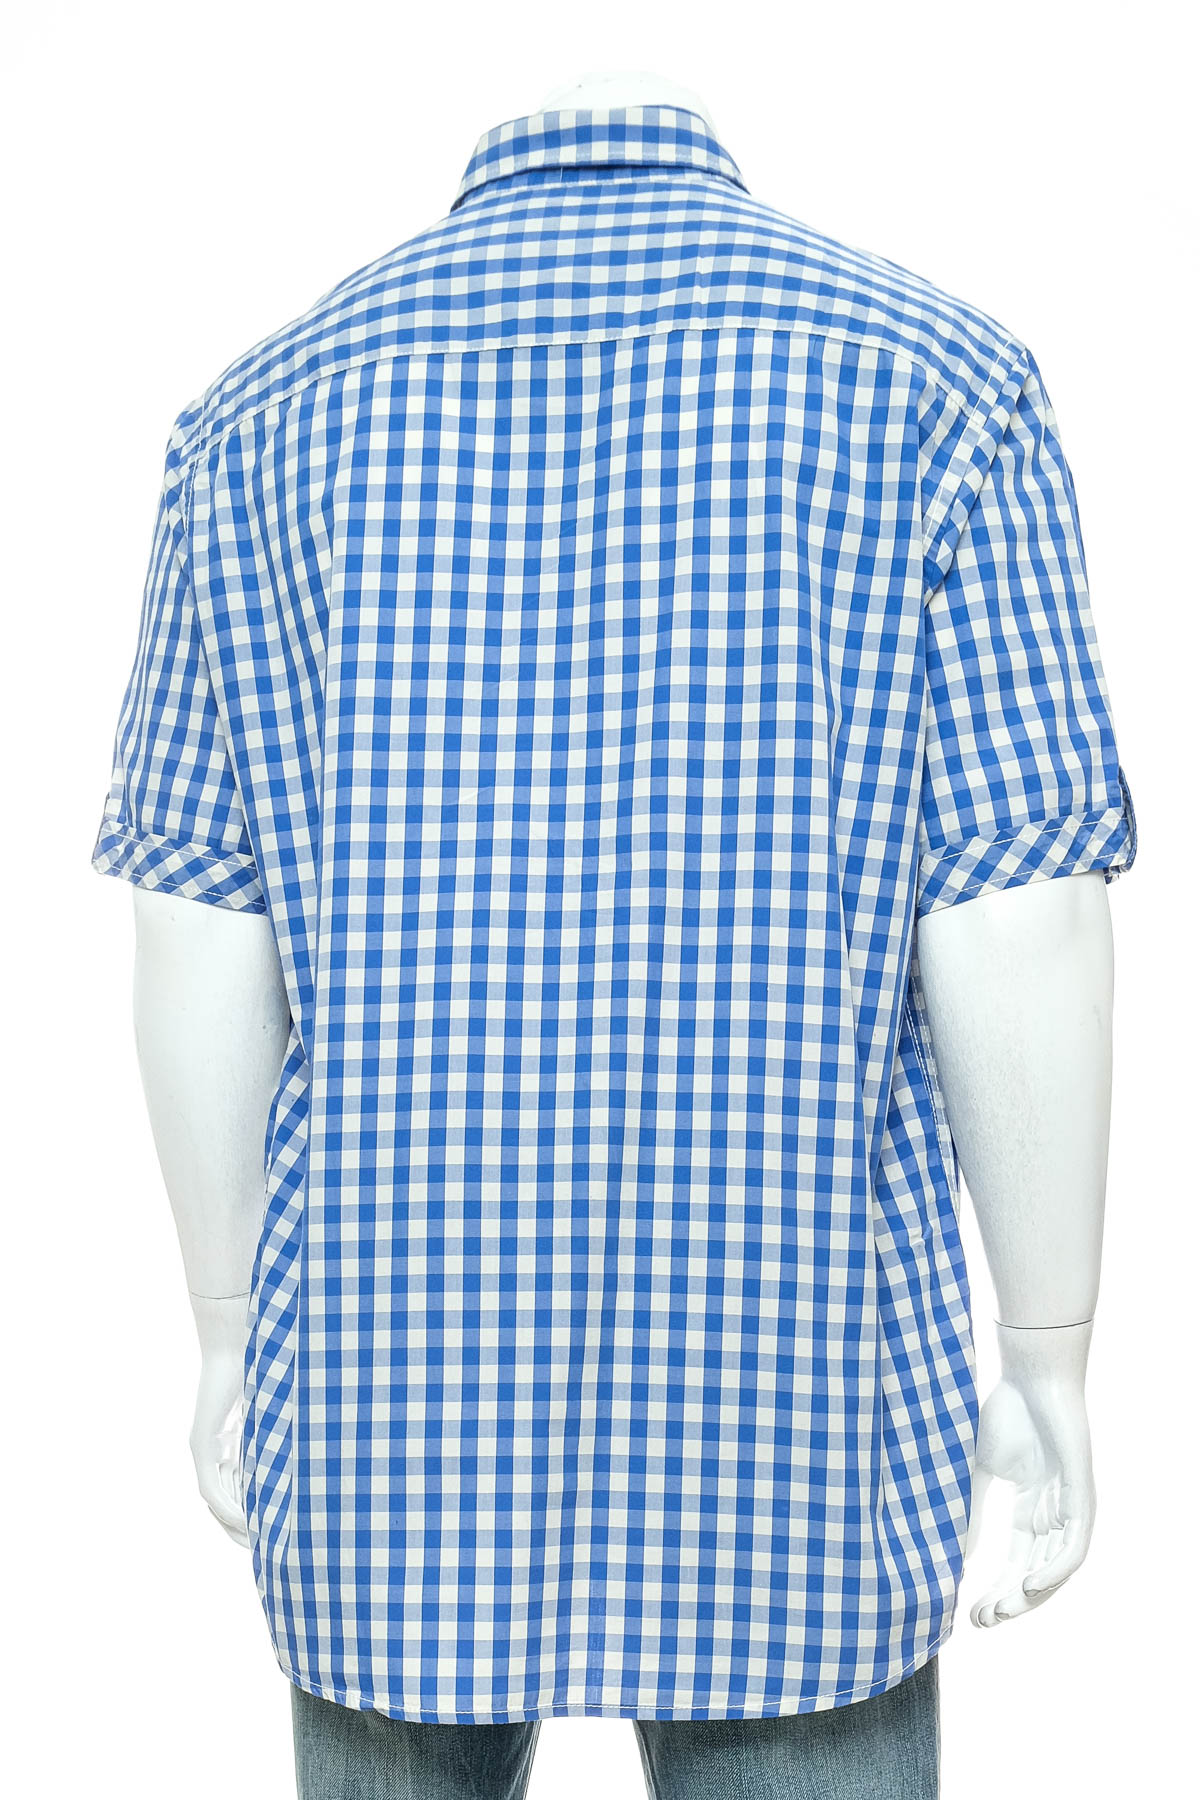 Men's shirt - Basefield - 1